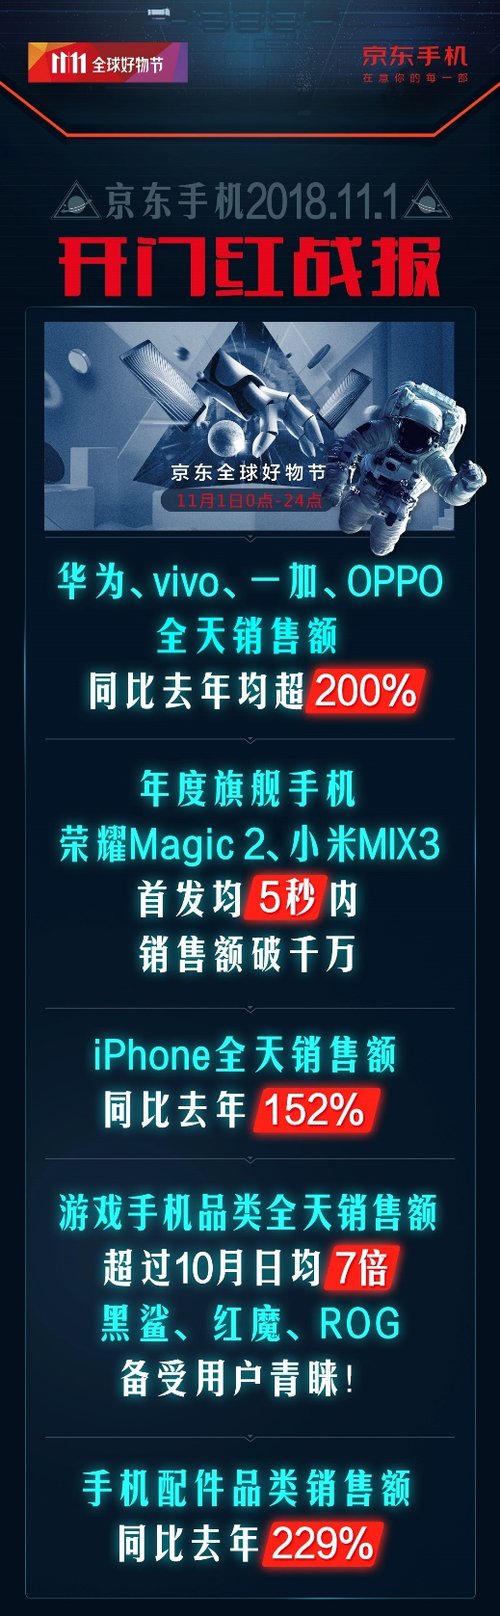 京東手機11.11開門紅戰績出爐 iPhone銷售額同比增長152% 科技 第1張